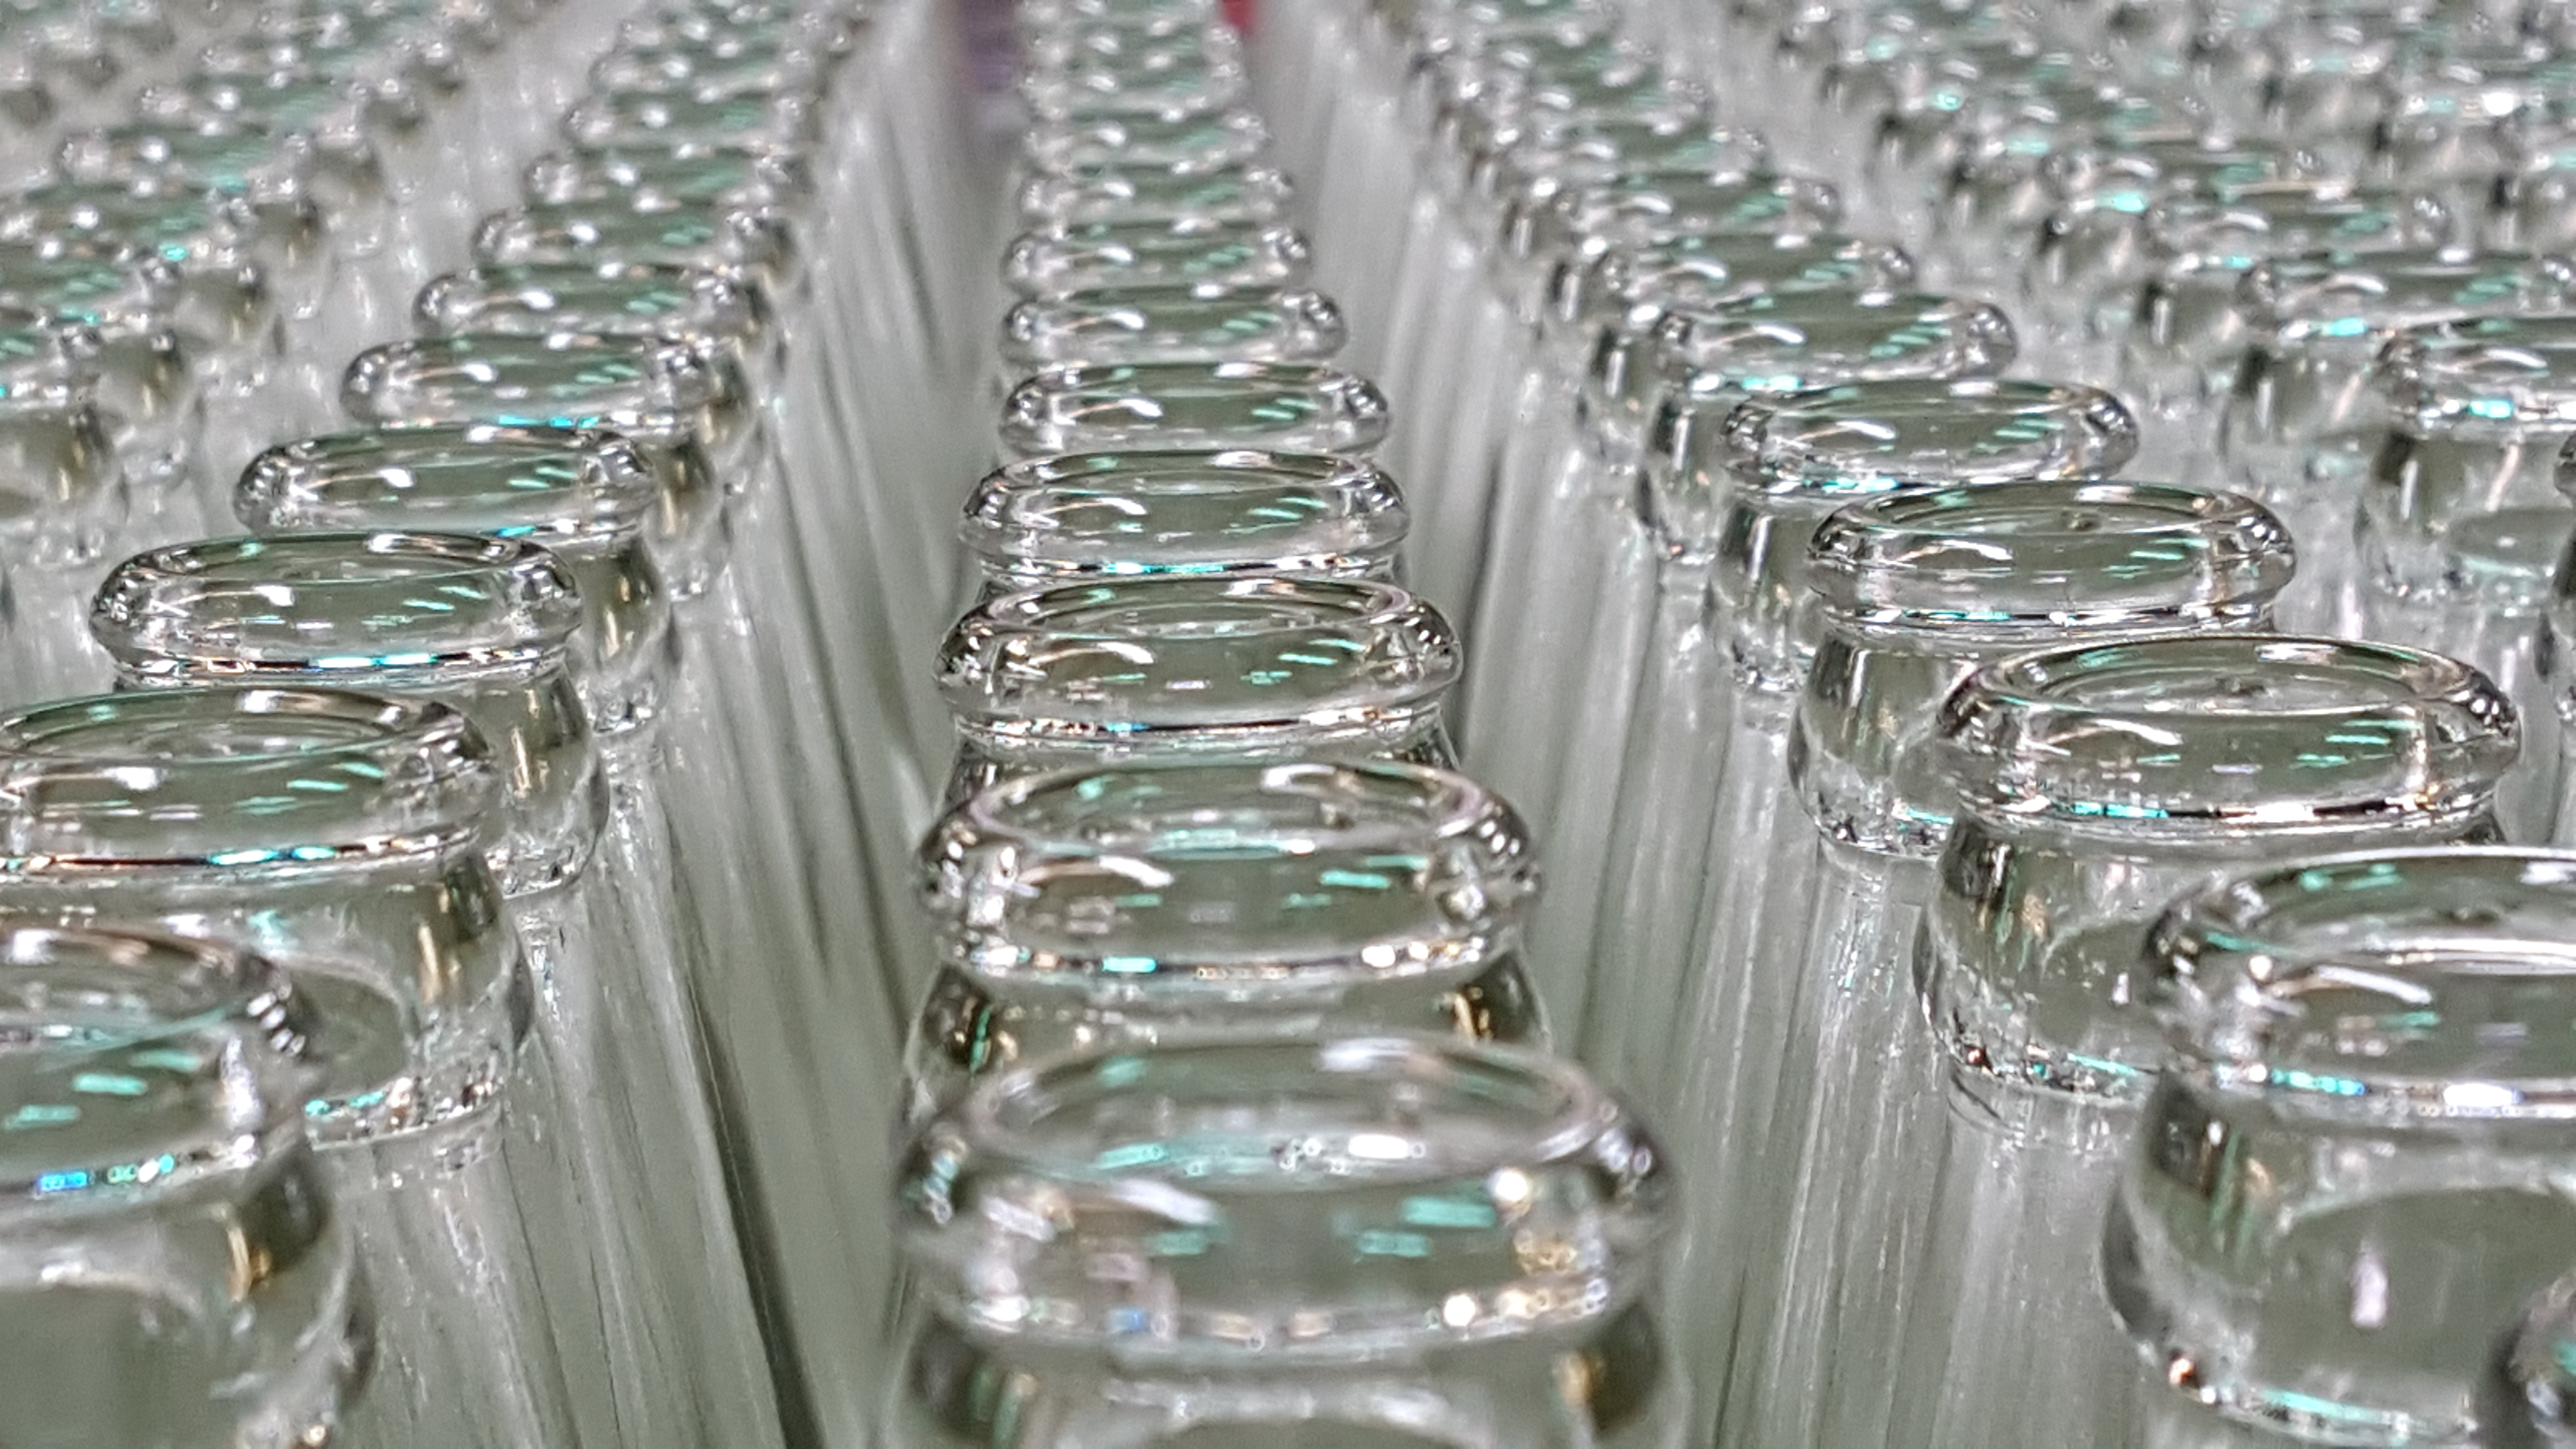 Reciclaje de vidrio aumentó un 30% en el 2016